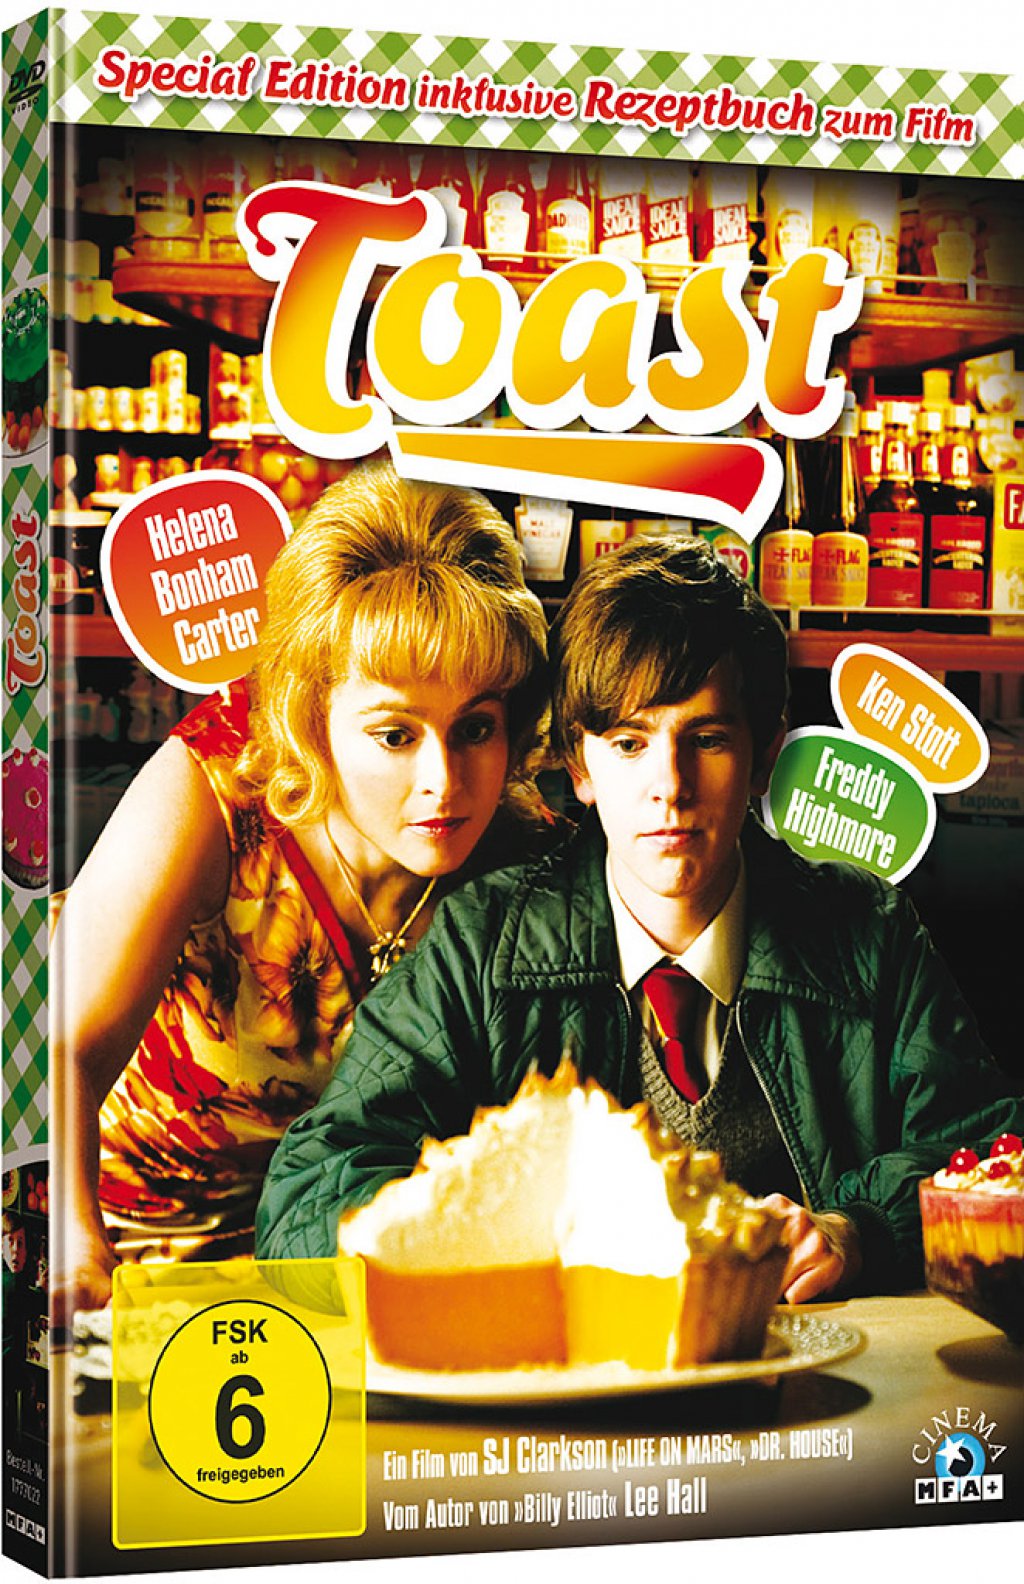 toast dvd copy